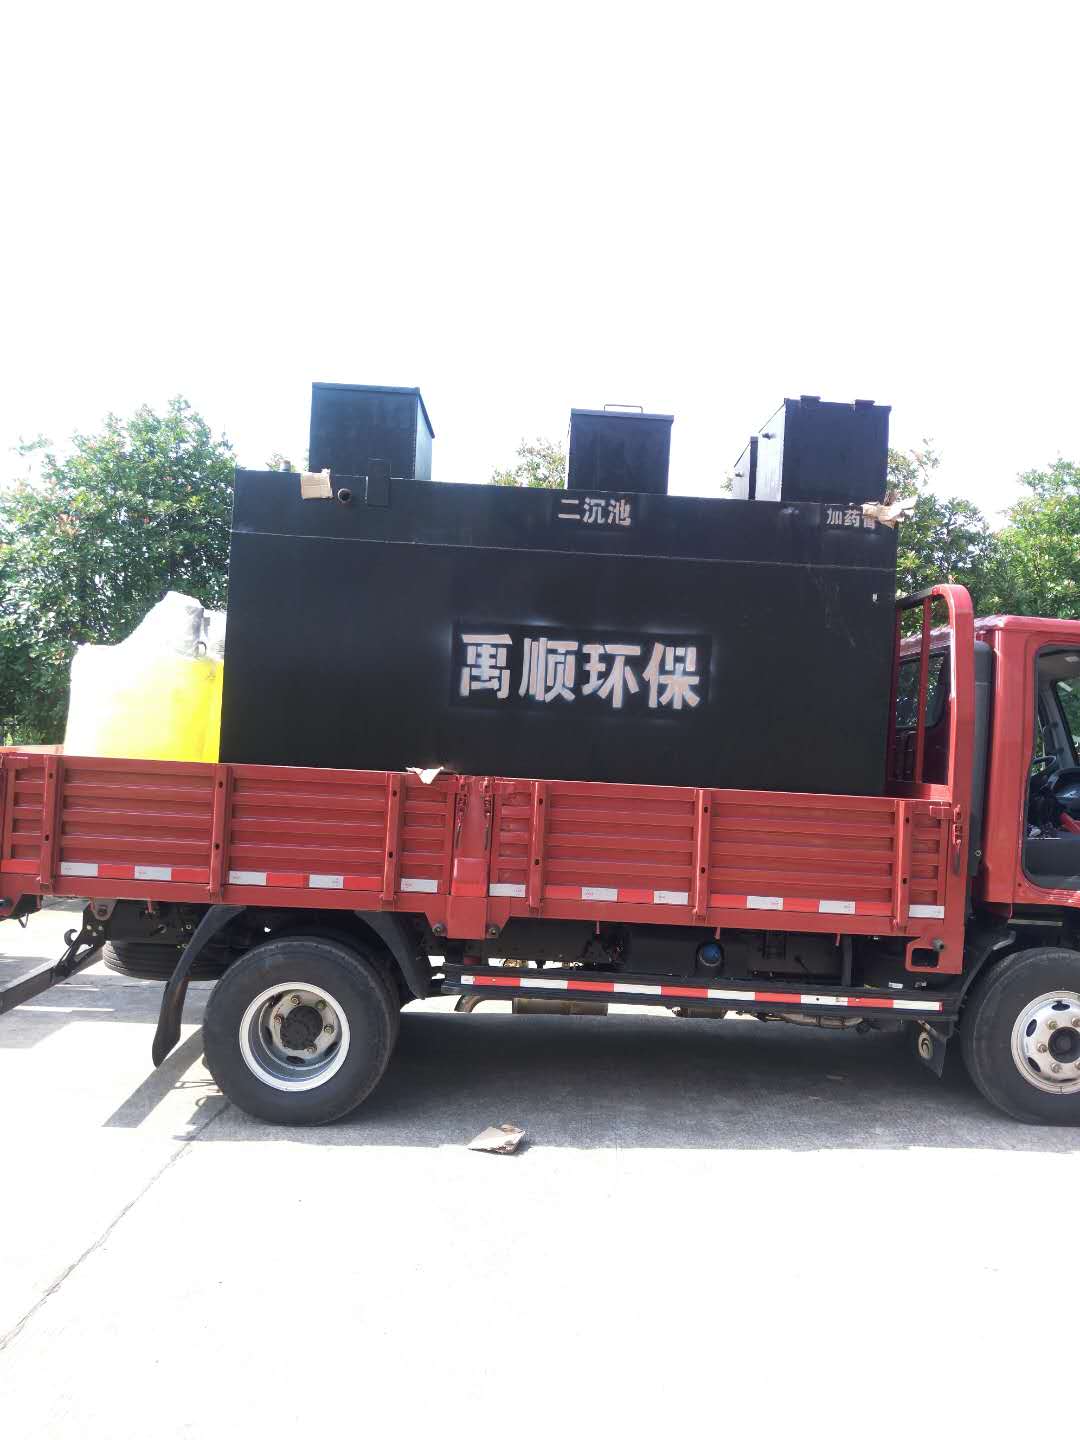 广西农村污水处理设备生产厂 水质确保验收合格